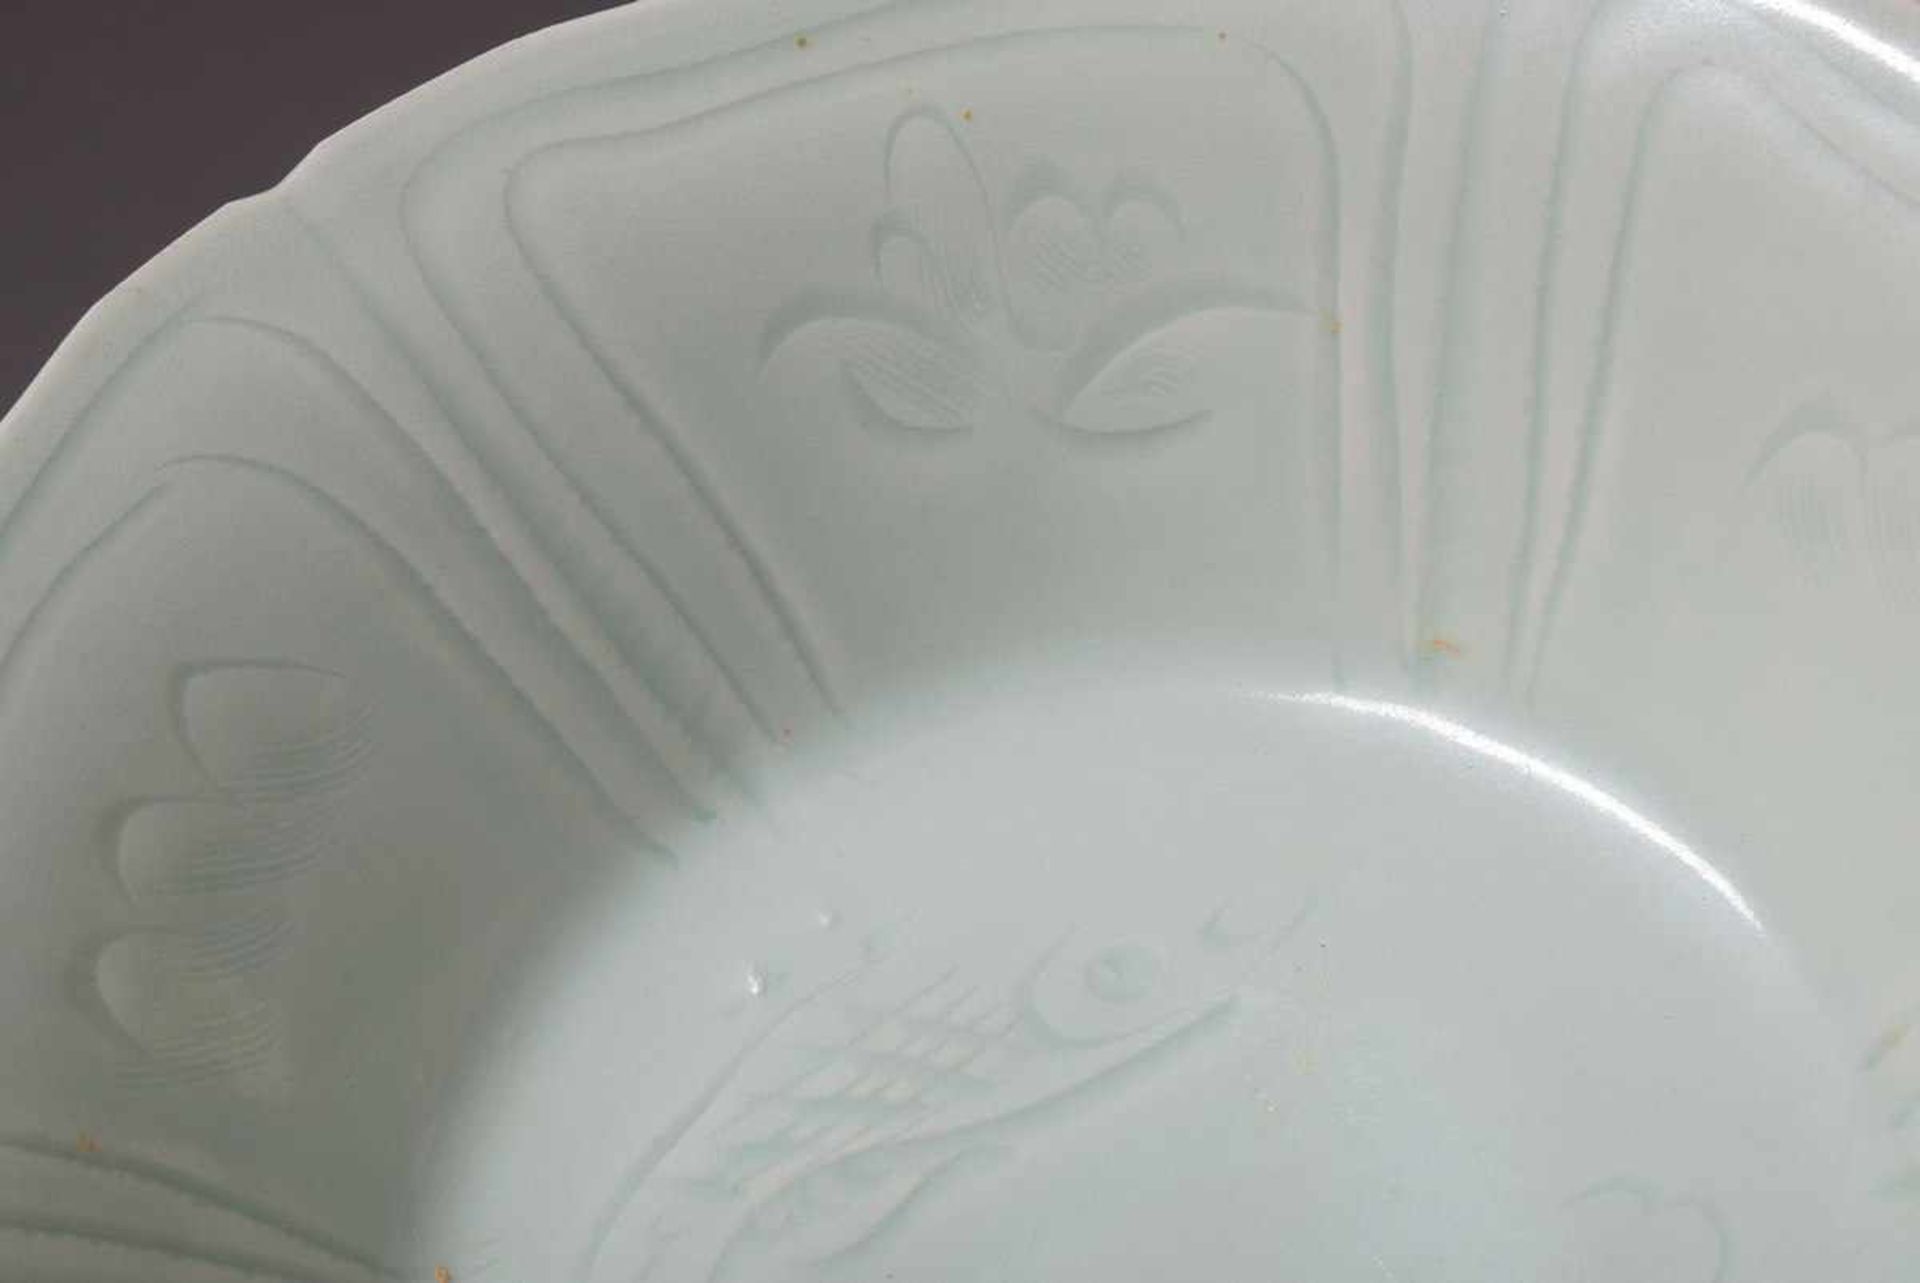 Sechsfach gelappte chinesische Porzellan Schale mit transparenter Seladonglasur und eingeschnittenem - Bild 4 aus 4